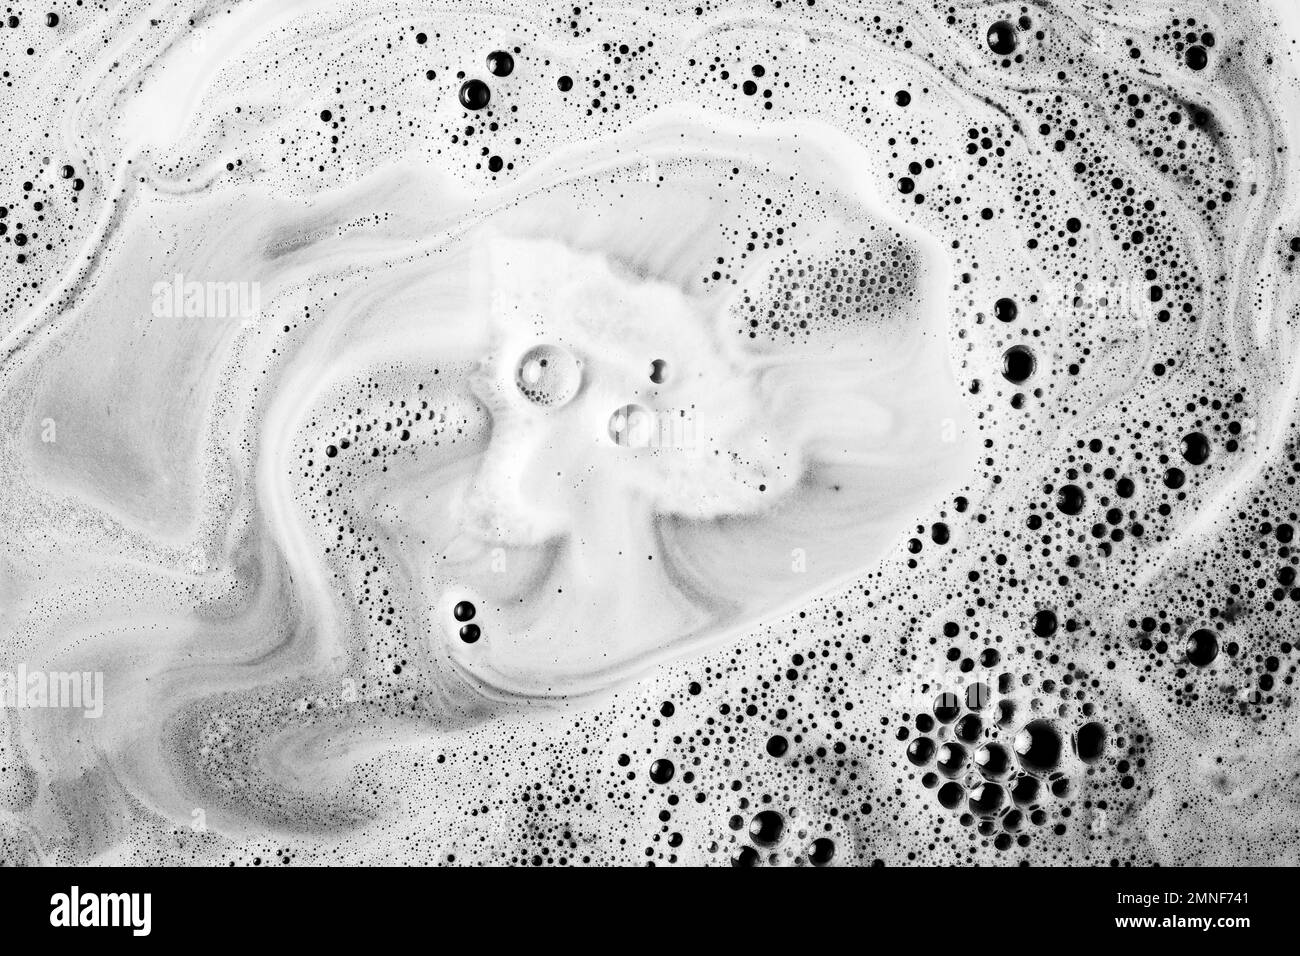 Auflösende Badewanne bombardieren Wasser mit Schaum. Auflösung und hochwertige schöne Fotos Stockfoto